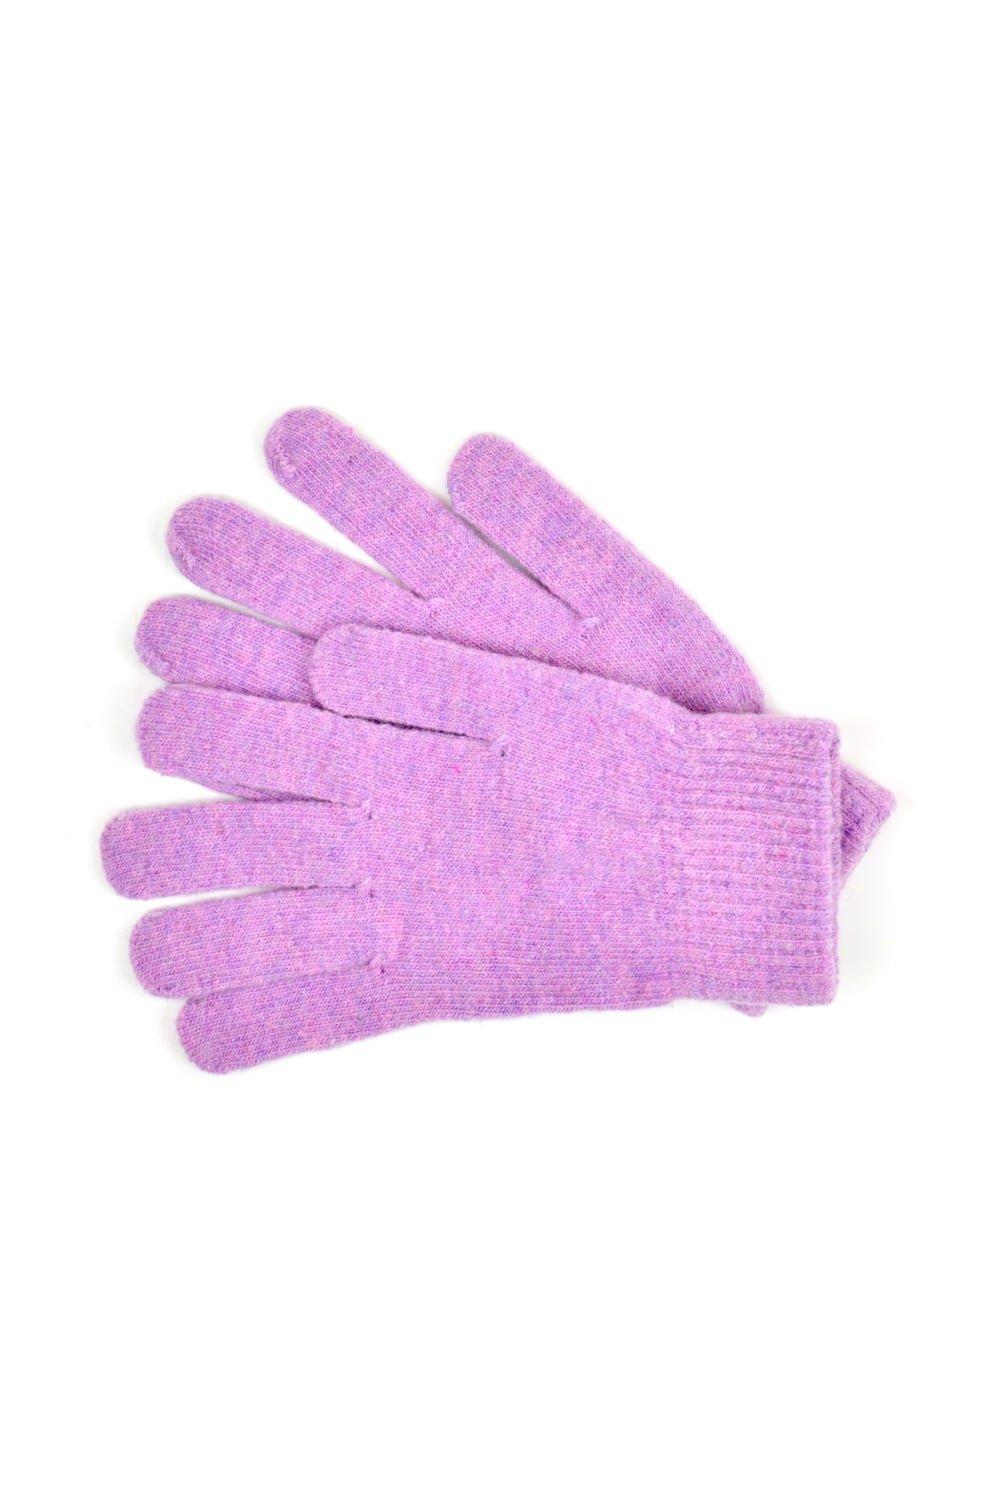 Зимние волшебные перчатки из шерсти Universal Textiles, розовый распродажа термовязаные зимние перчатки universal textiles серый